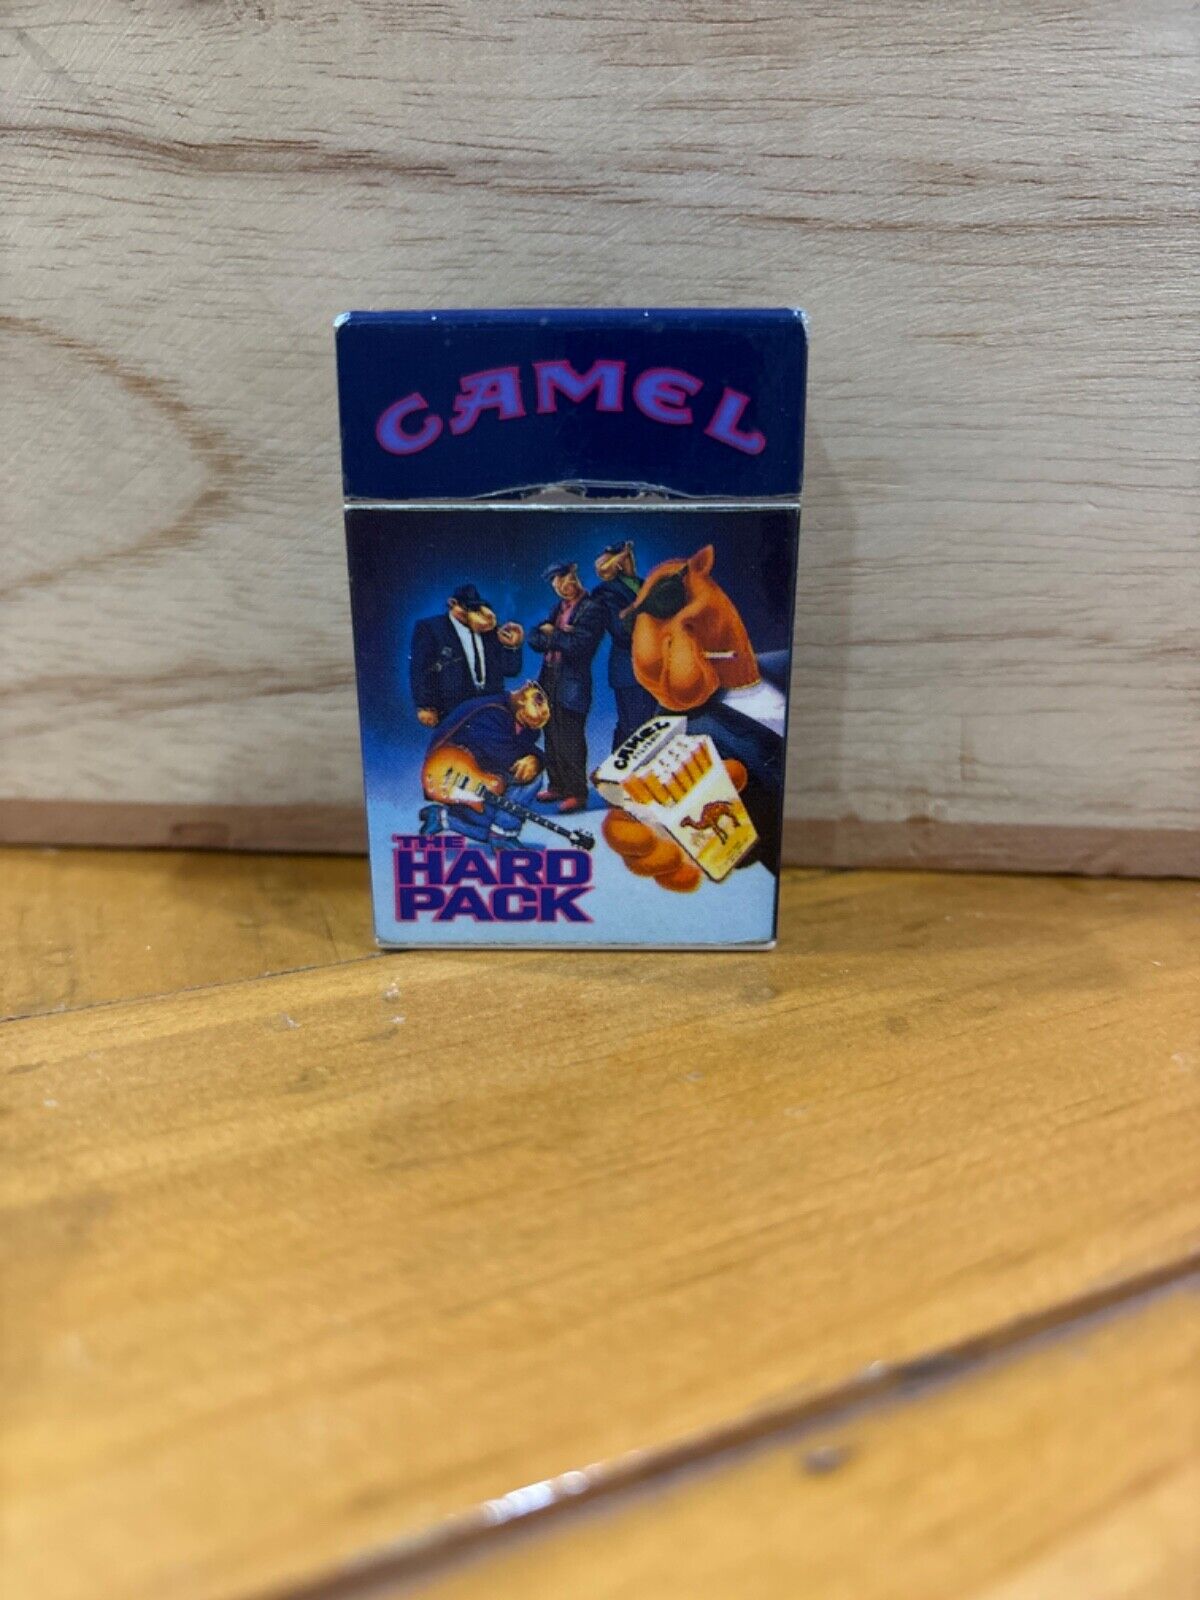 Vintage 1992 Camel Cigarettes Joe Camel “The Hard Pack” Lighter Guitar Band